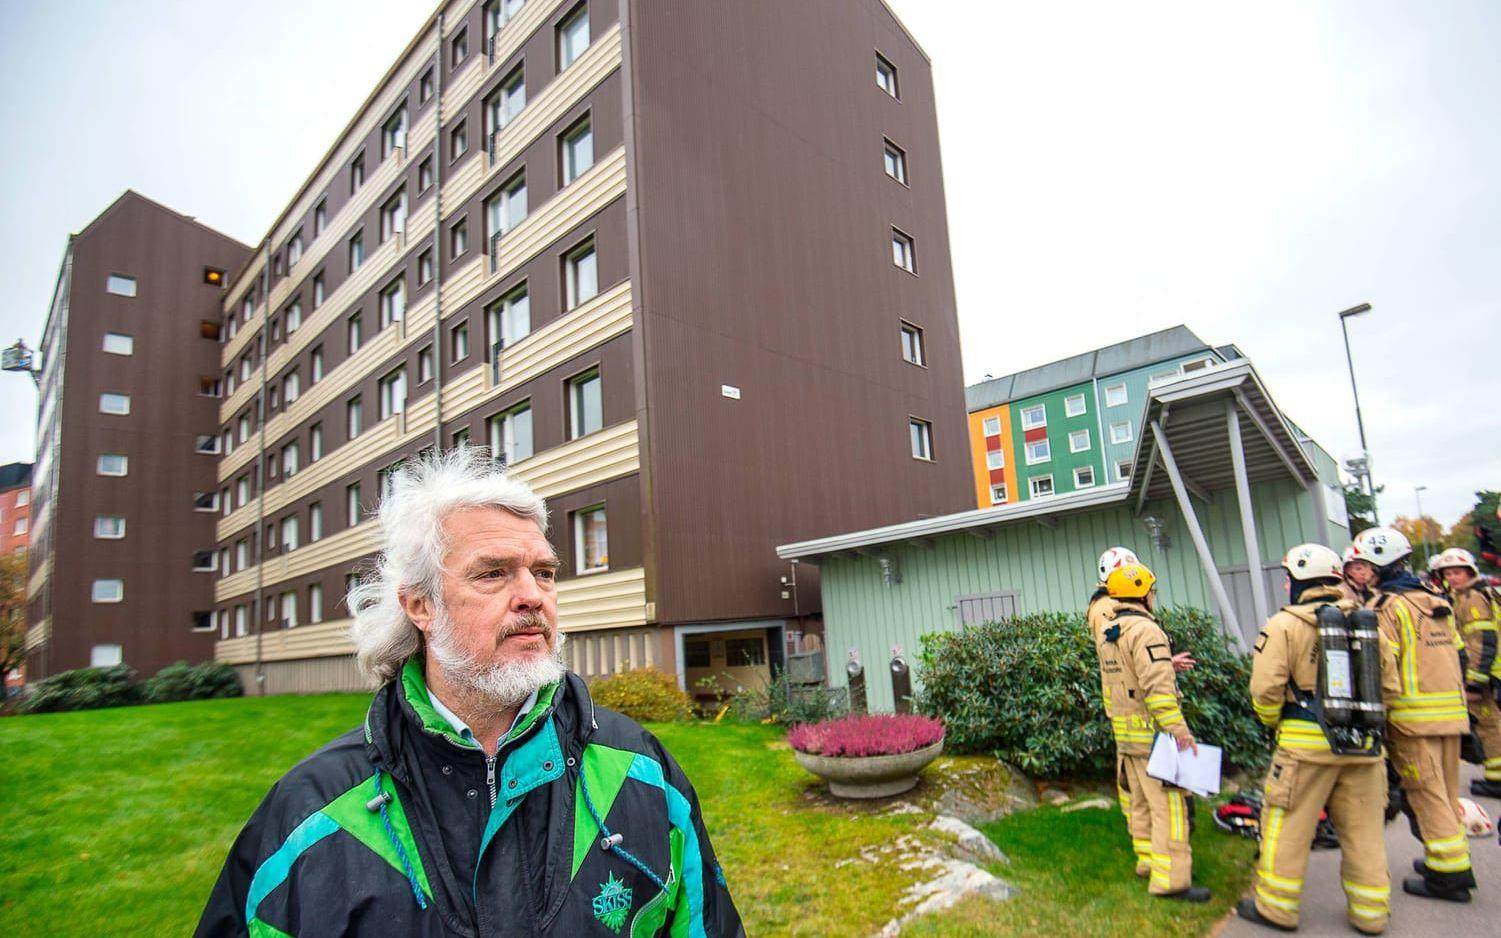 Att det brinner för tredje gången på en vecka i samma lägenhet gör Dan Andersson som bor i huset förbannad. Bild: Stefan Bennhage